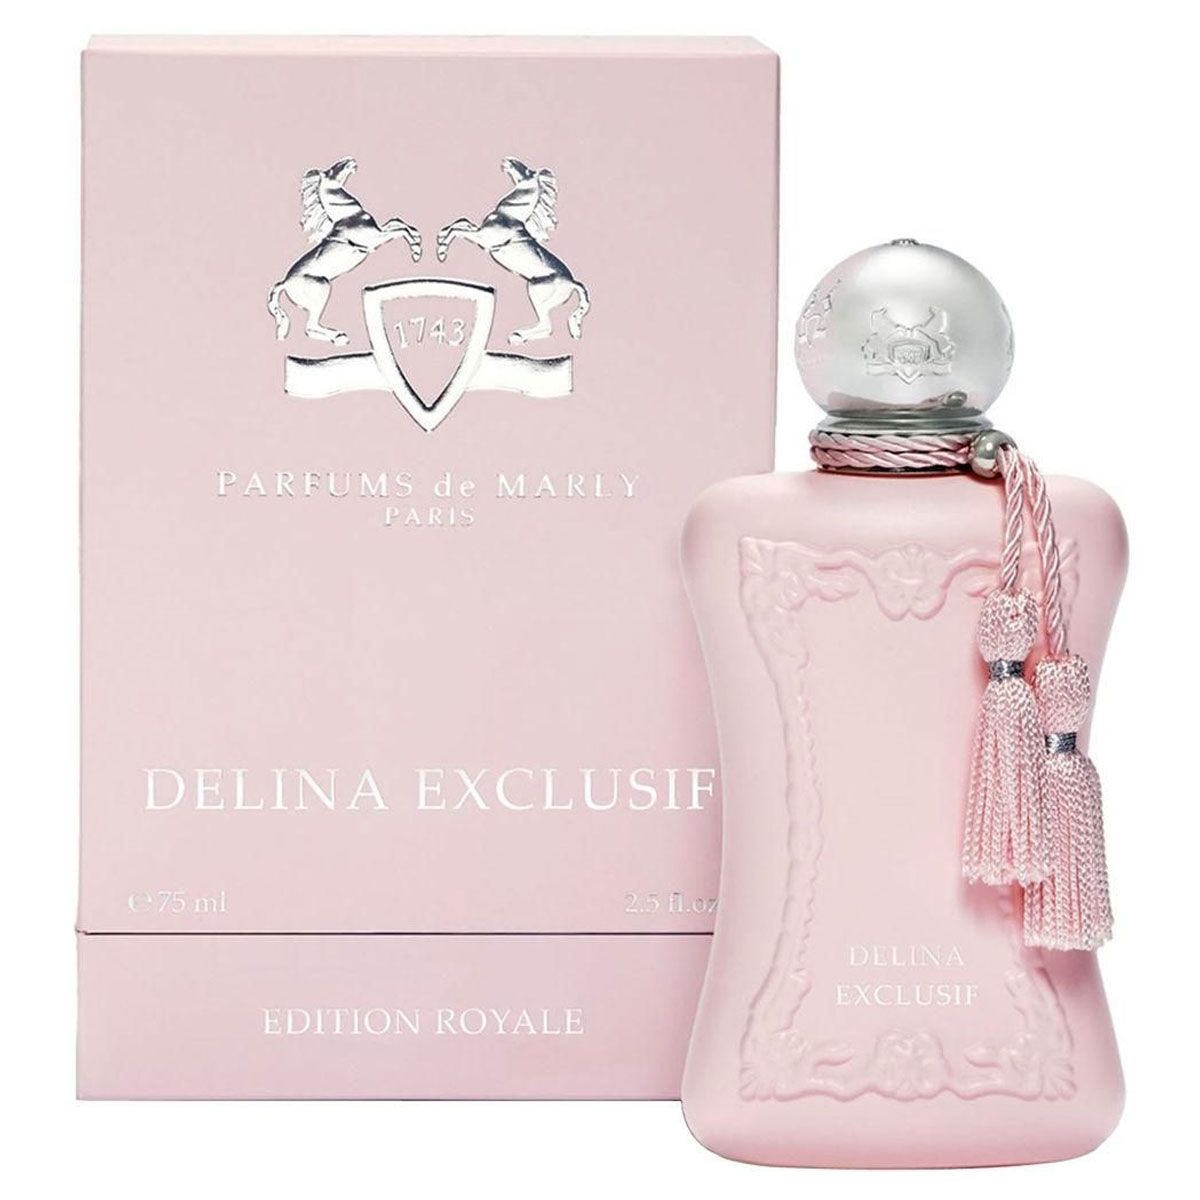  Parfums de Marly Delina Exclusif 